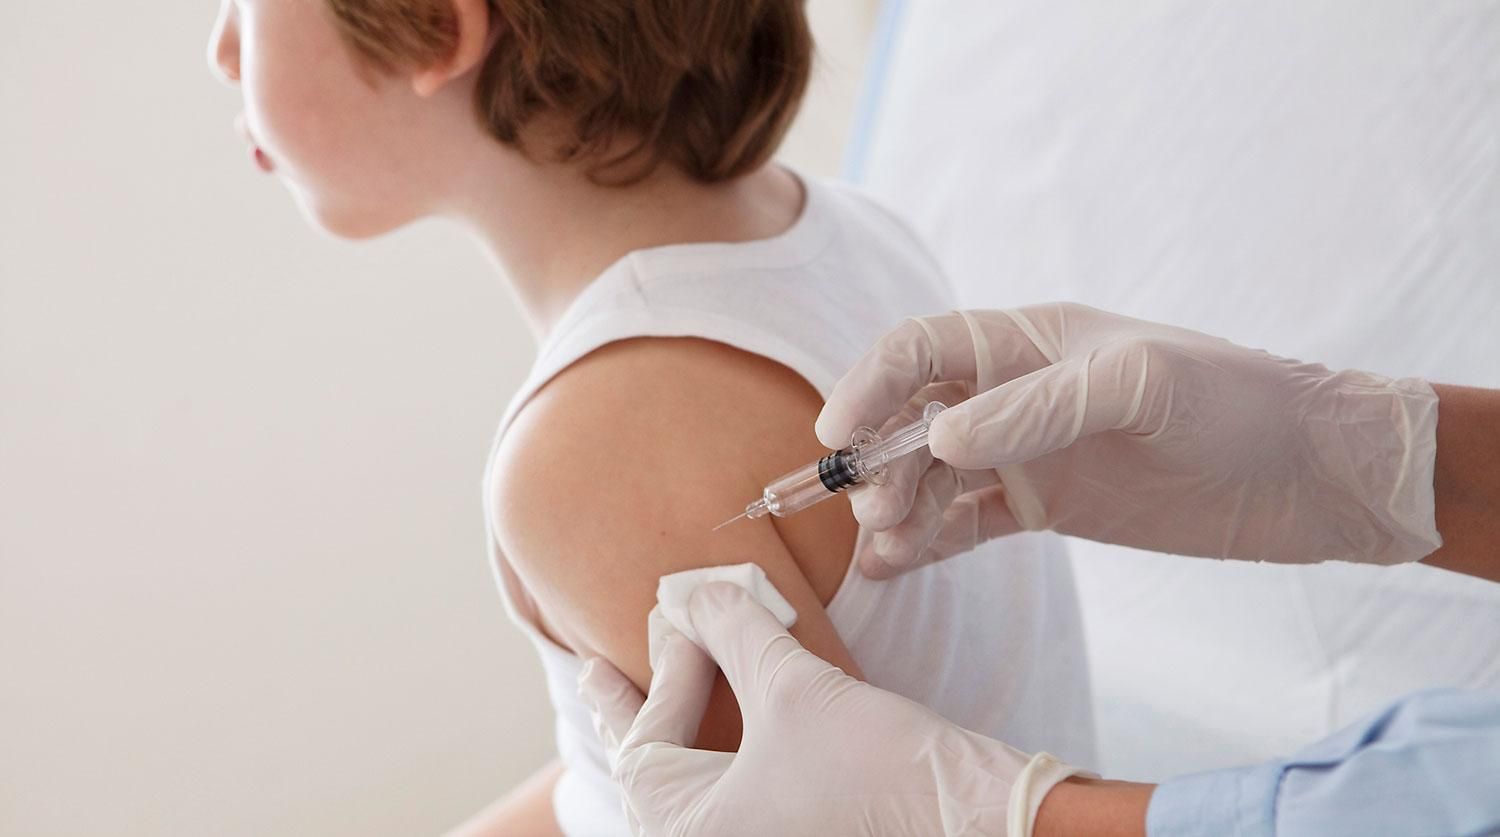 В ОАЭ детей с 3 лет будут вакцинировать против коронавируса Sinopharm